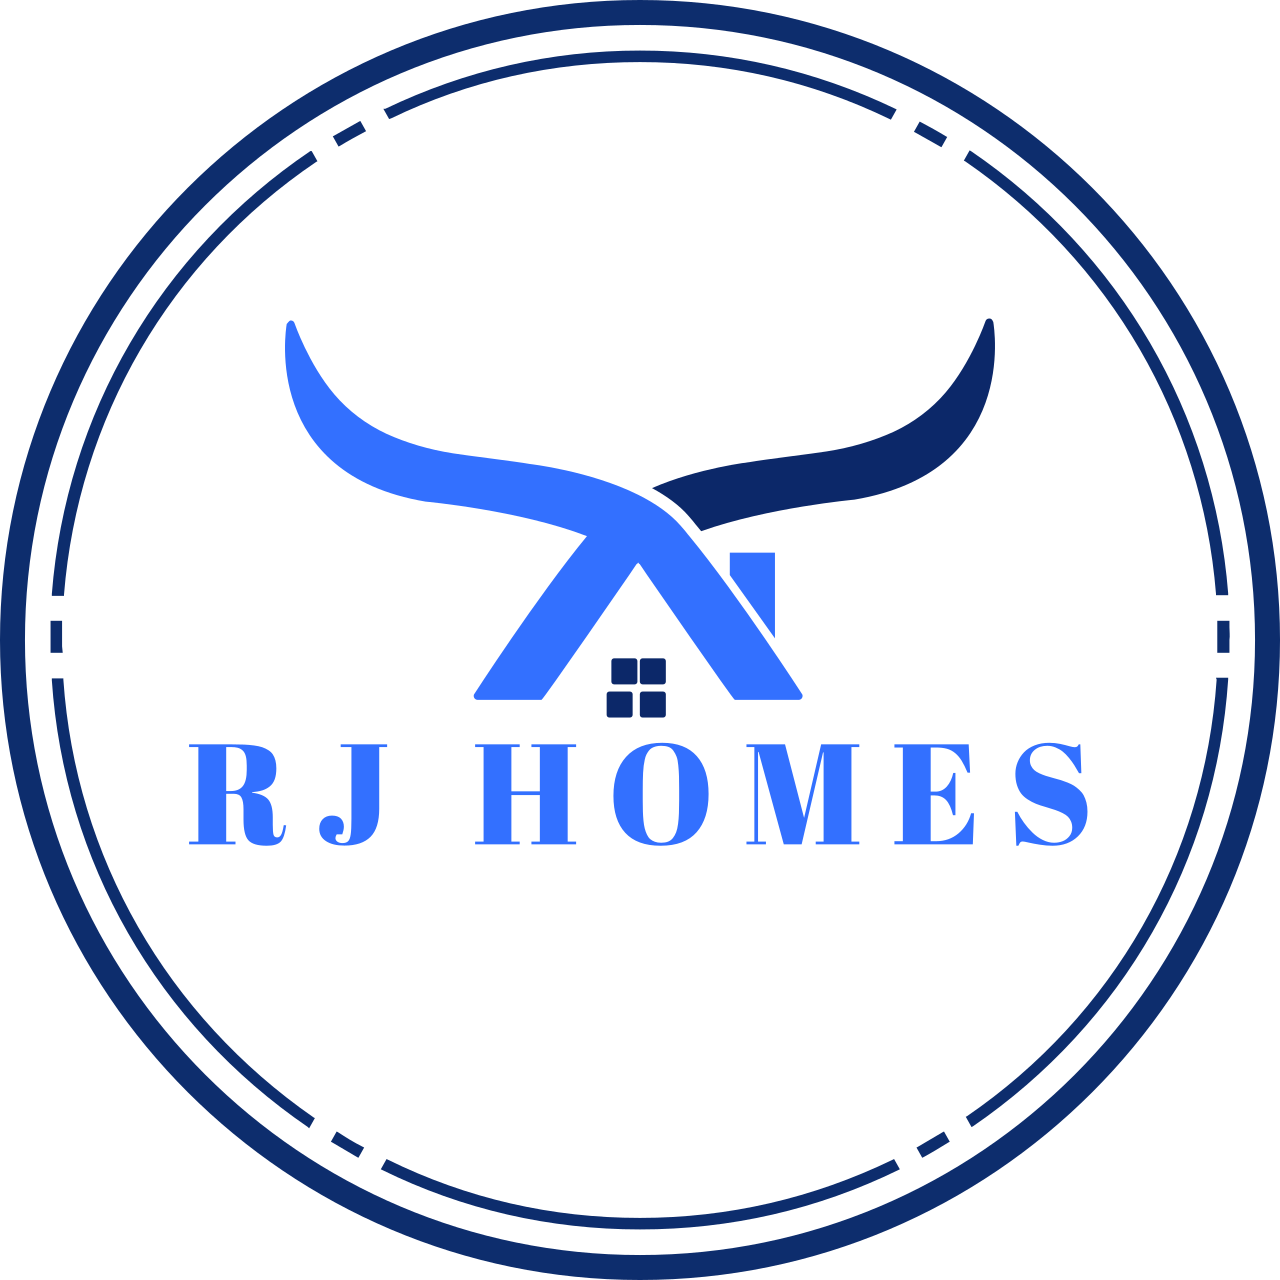 RJ Homes's logo